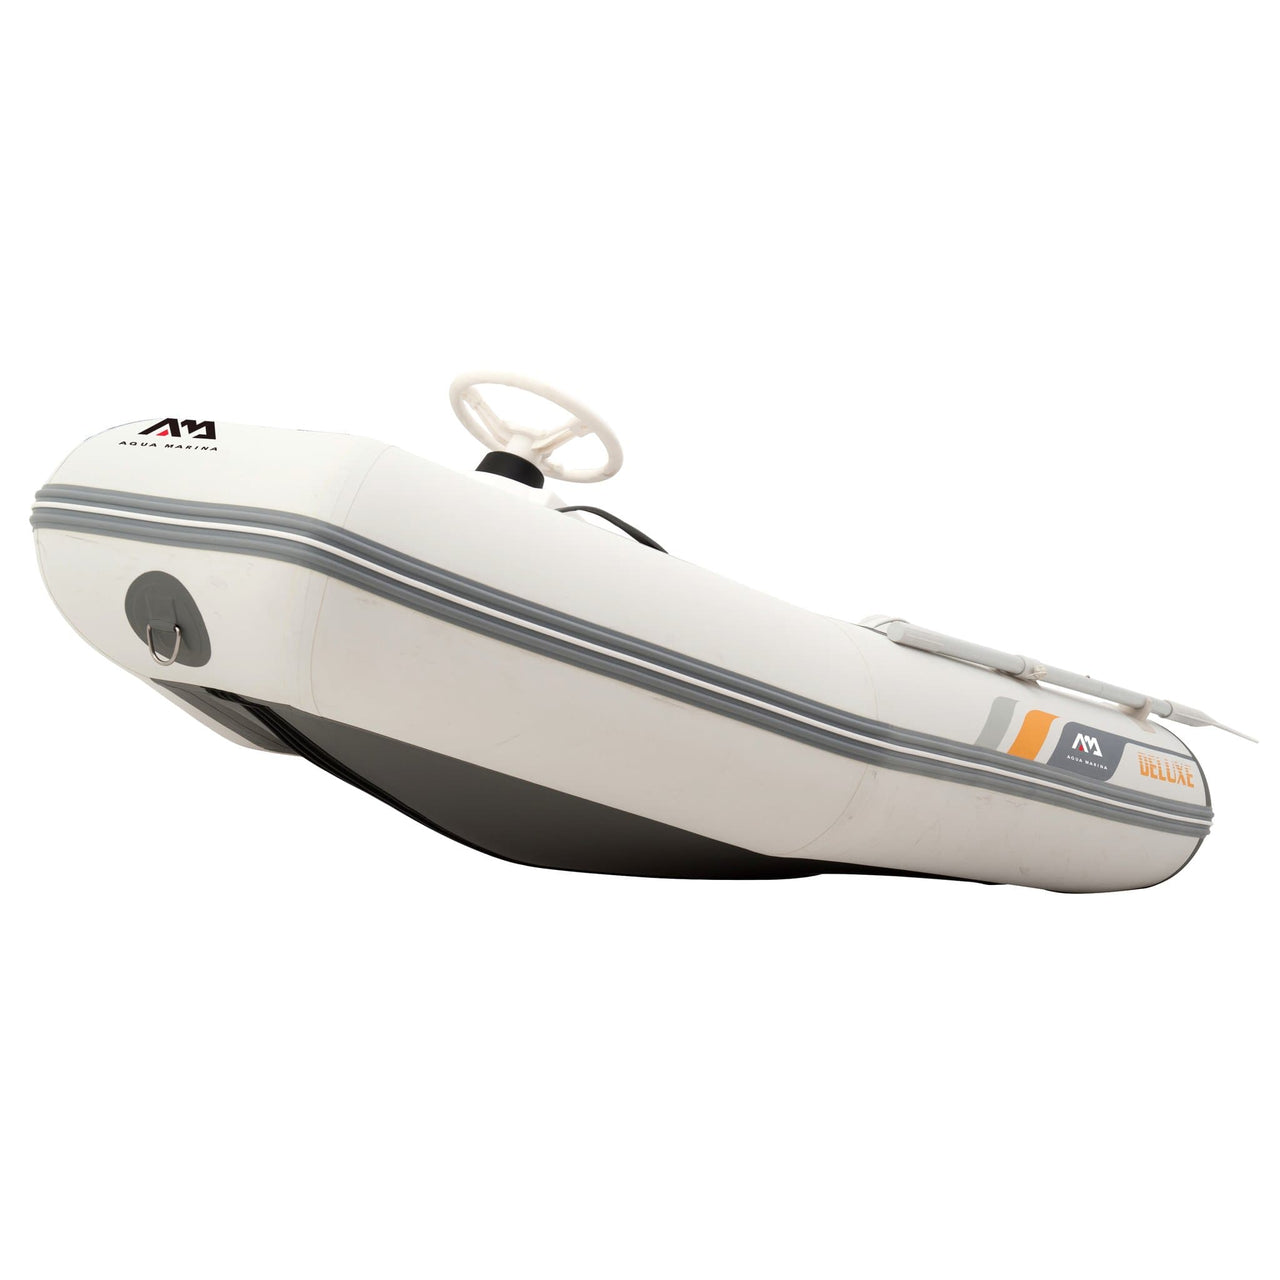 Aqua Marina 9’1” x 4’11” A-Deluxe Sports Boat with Aluminum Deck - Good Wave